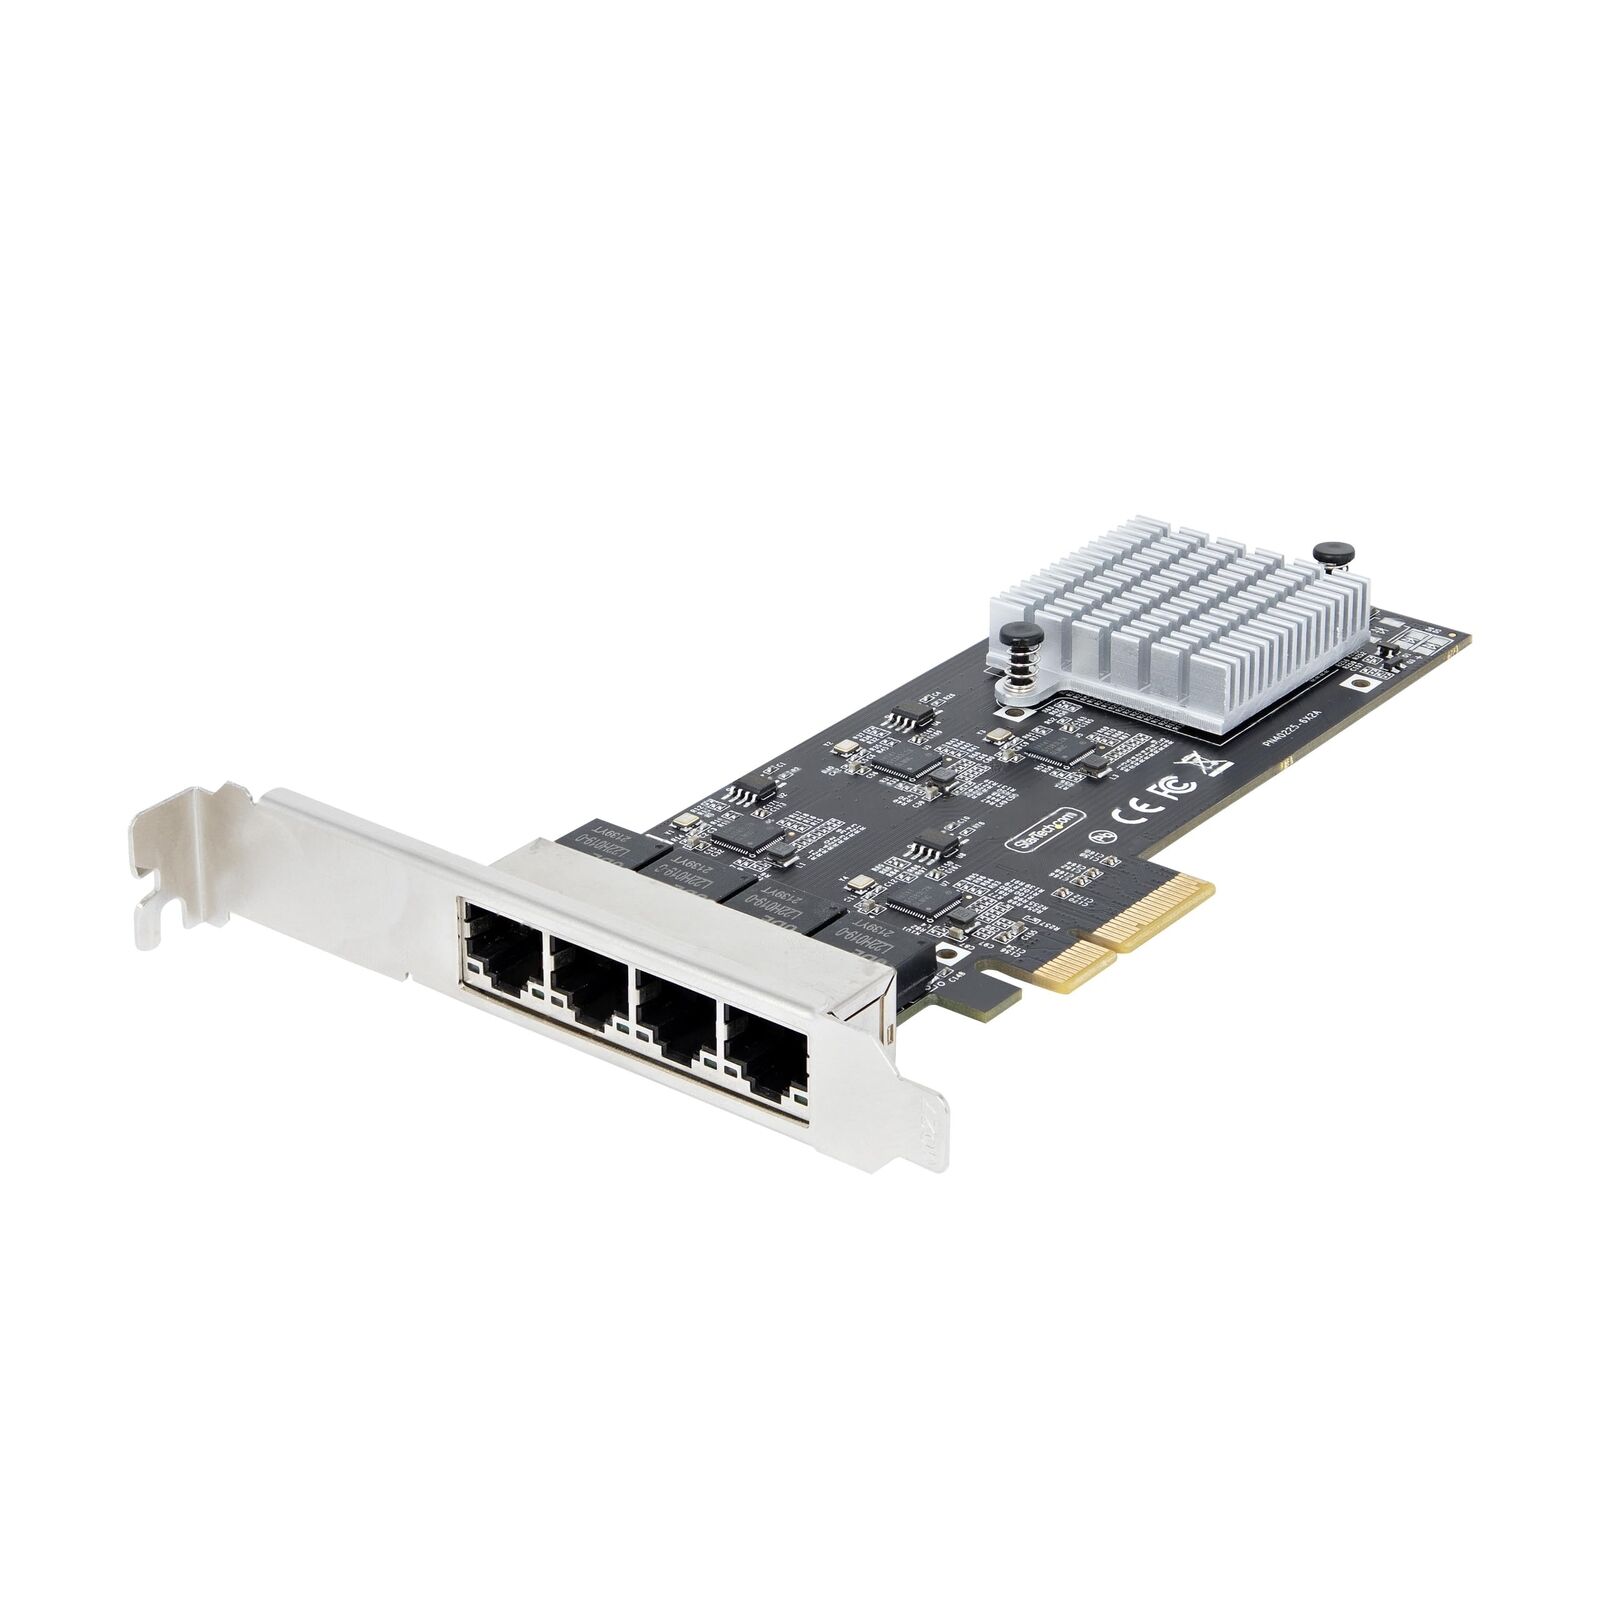 StarTech.com 4-Port 2.5Gbps NBASE-T PCIe Network Card, Intel I225-V, Quad-Port